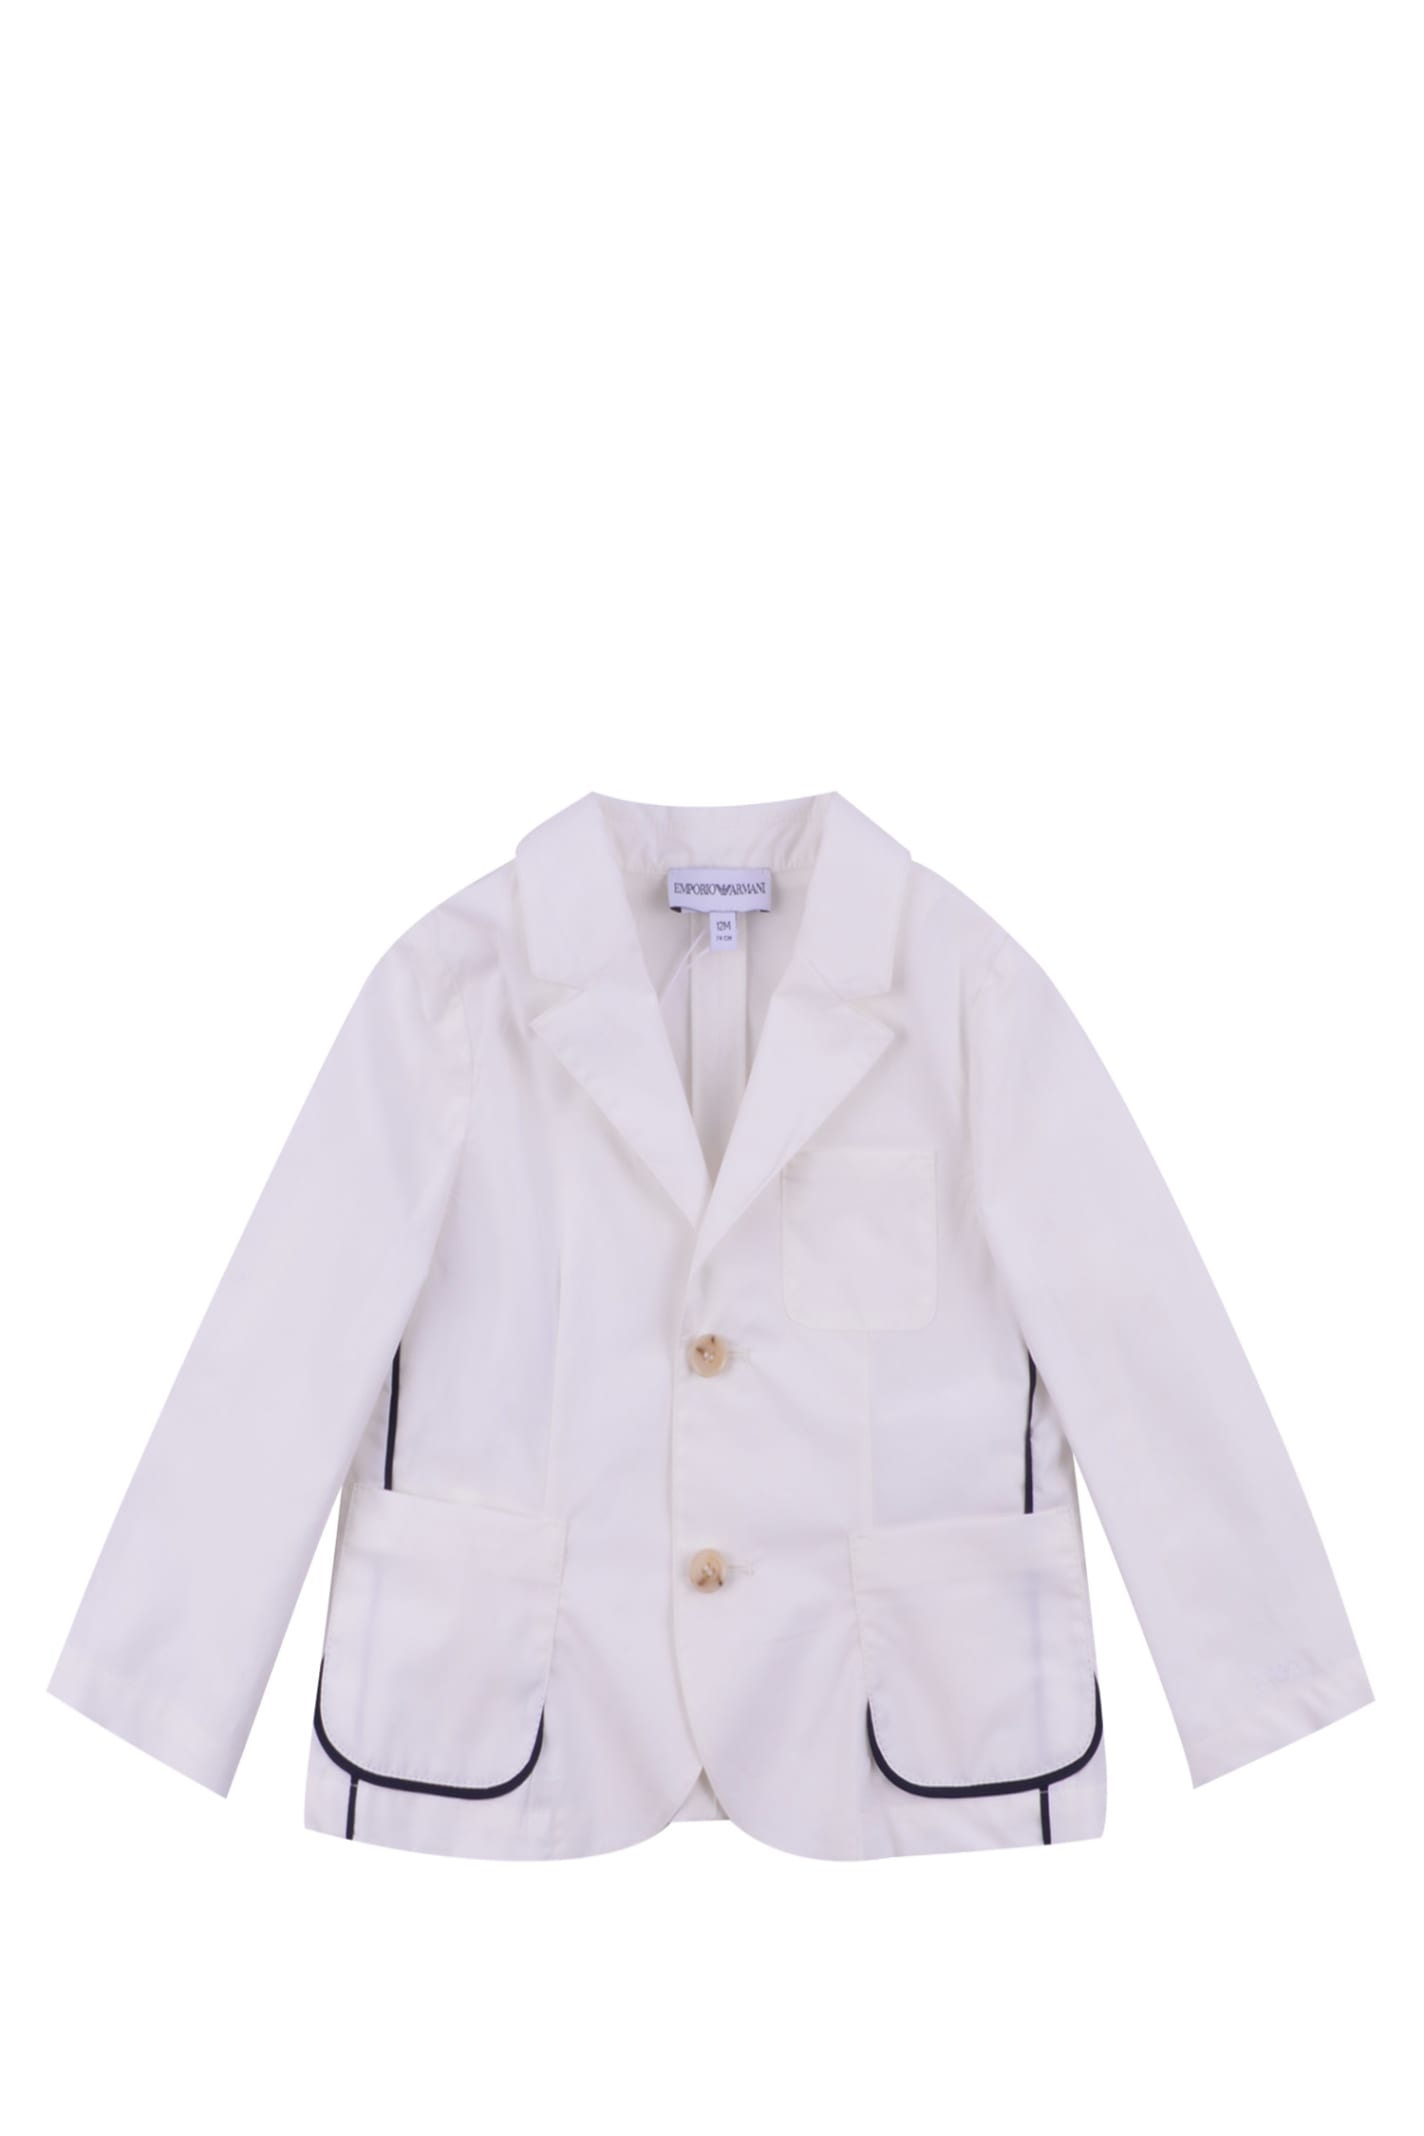 Emporio Armani Babies' Cotton Jacket In White